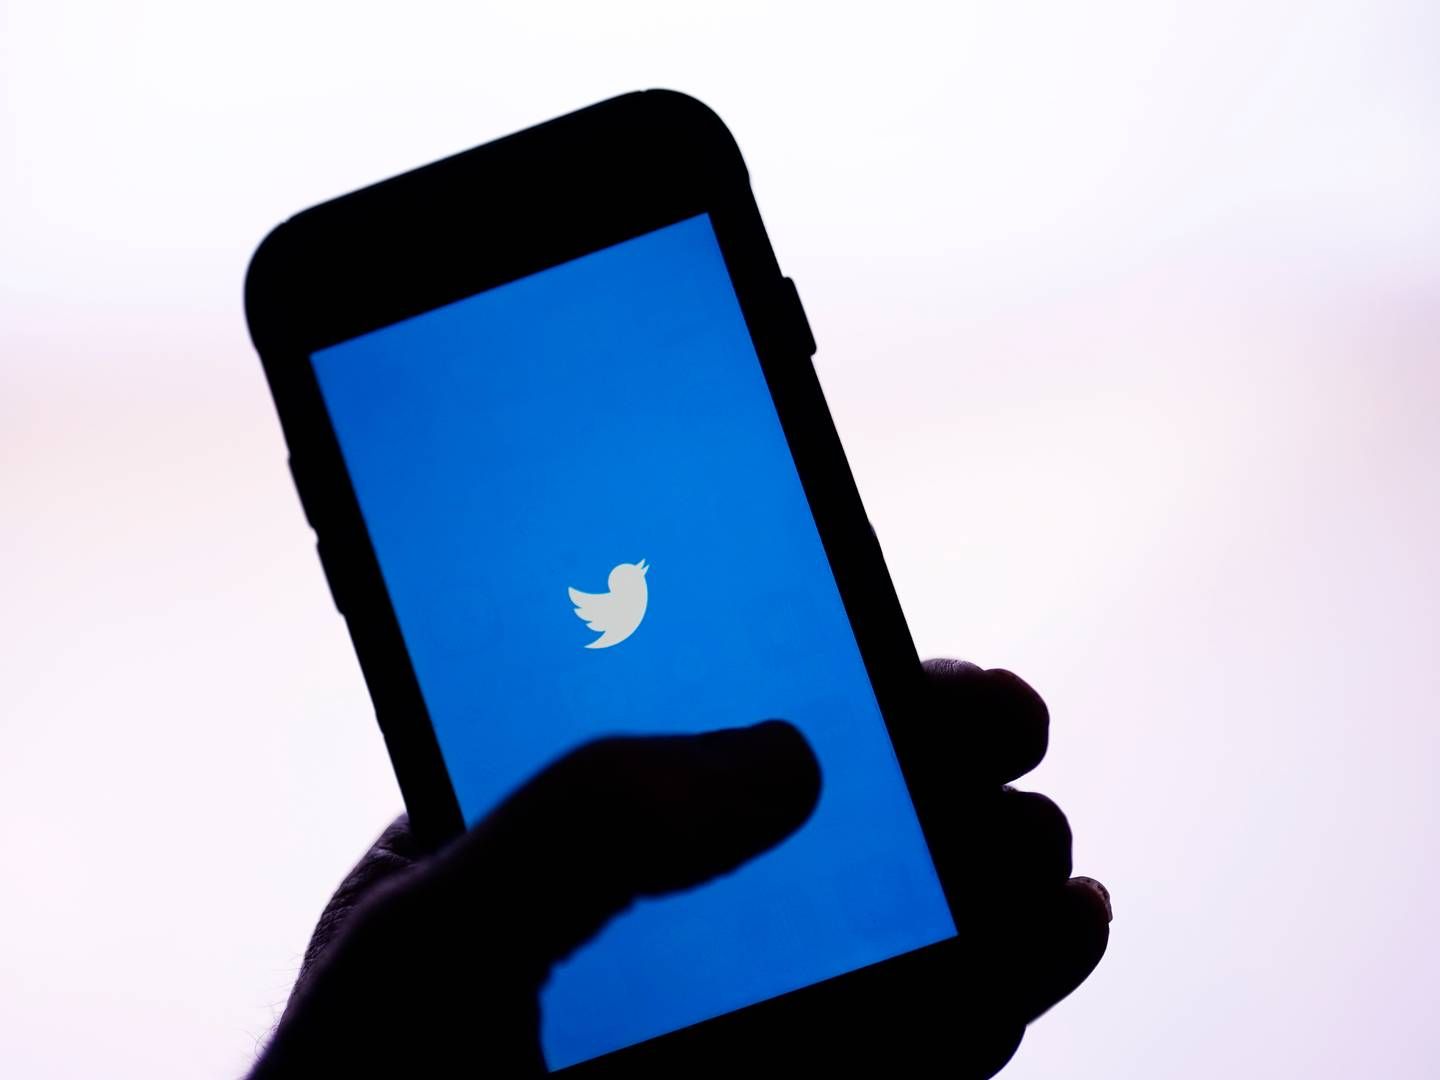 Twitter har i 2023 indført en ny ordning for at få profiler verificeret, og dette er et eksempel på, hvorfor det er risikabelt at lade aktører stå for kategoriseringen og verificeringen af dem selv, mener tidligere indholdsmoderator i Twitter.